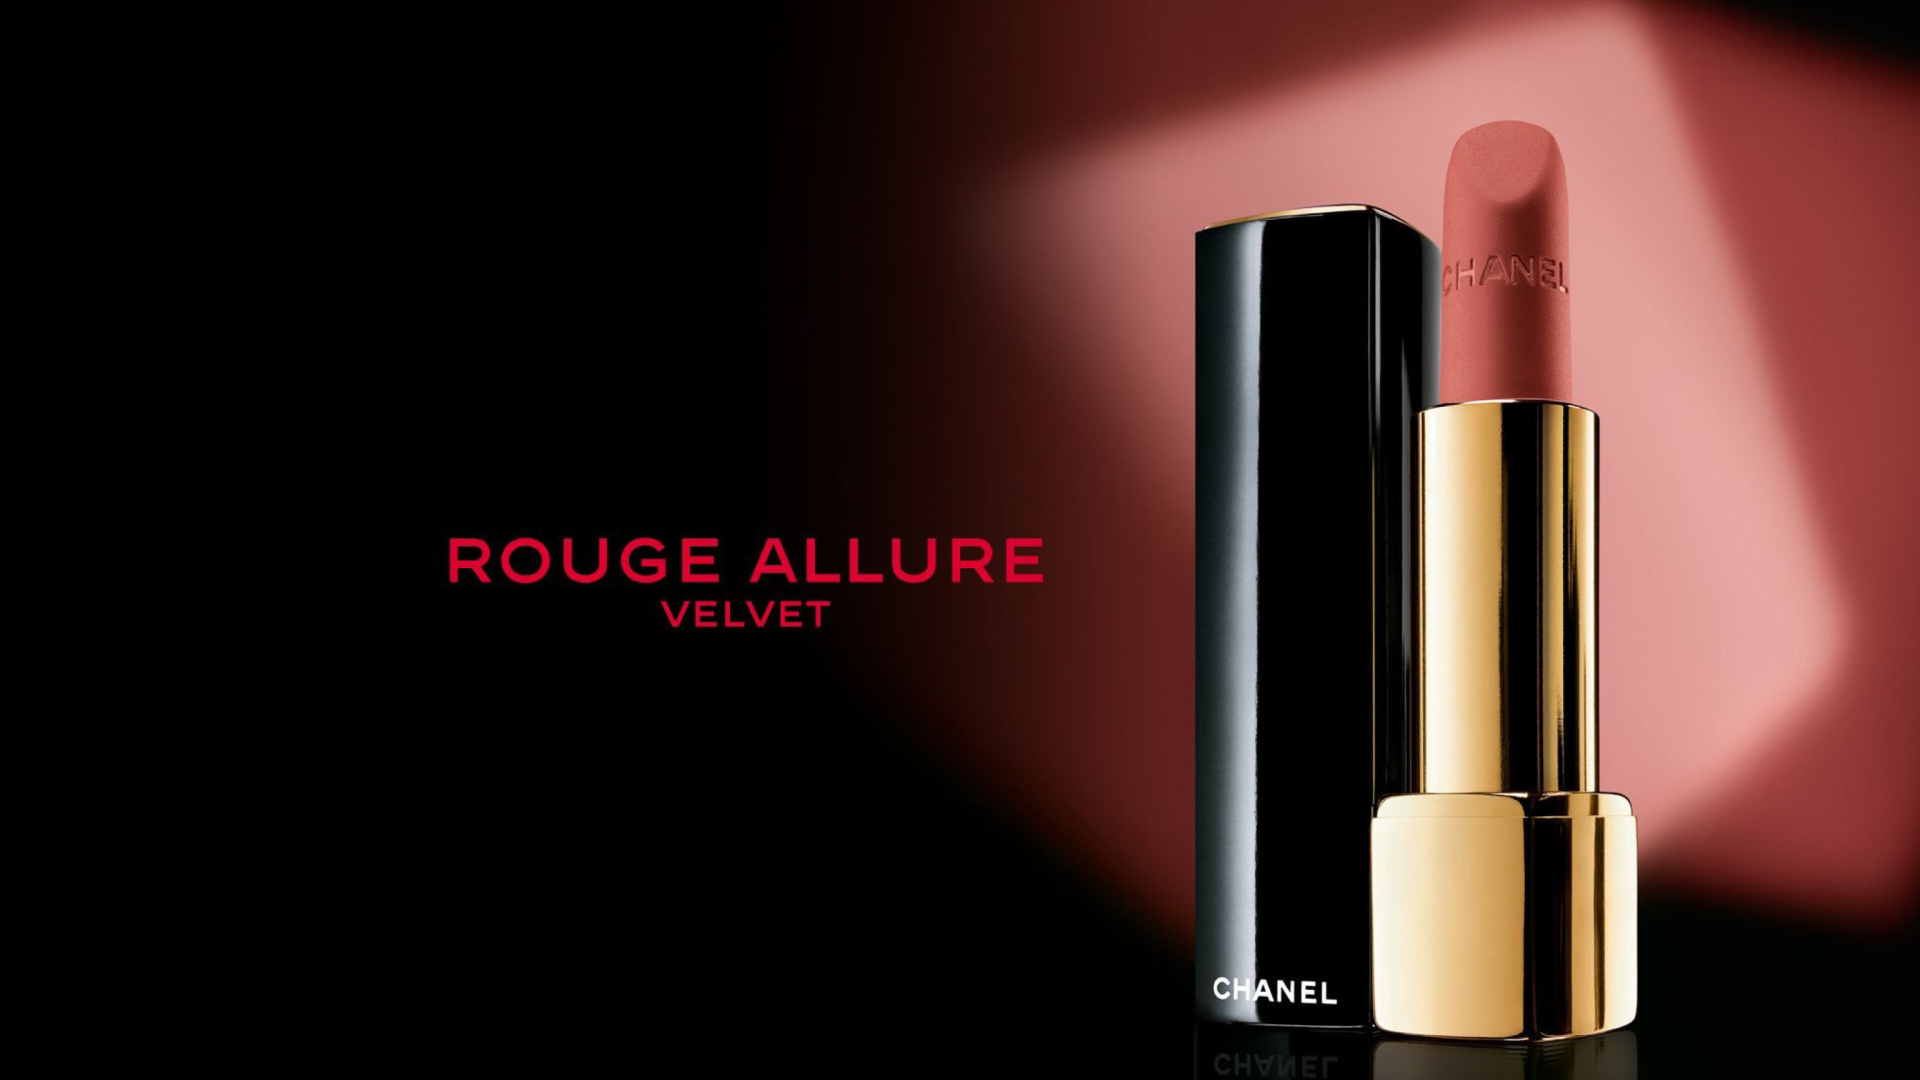 Sfondi Chanel Rouge Allure Velvet 1920x1080